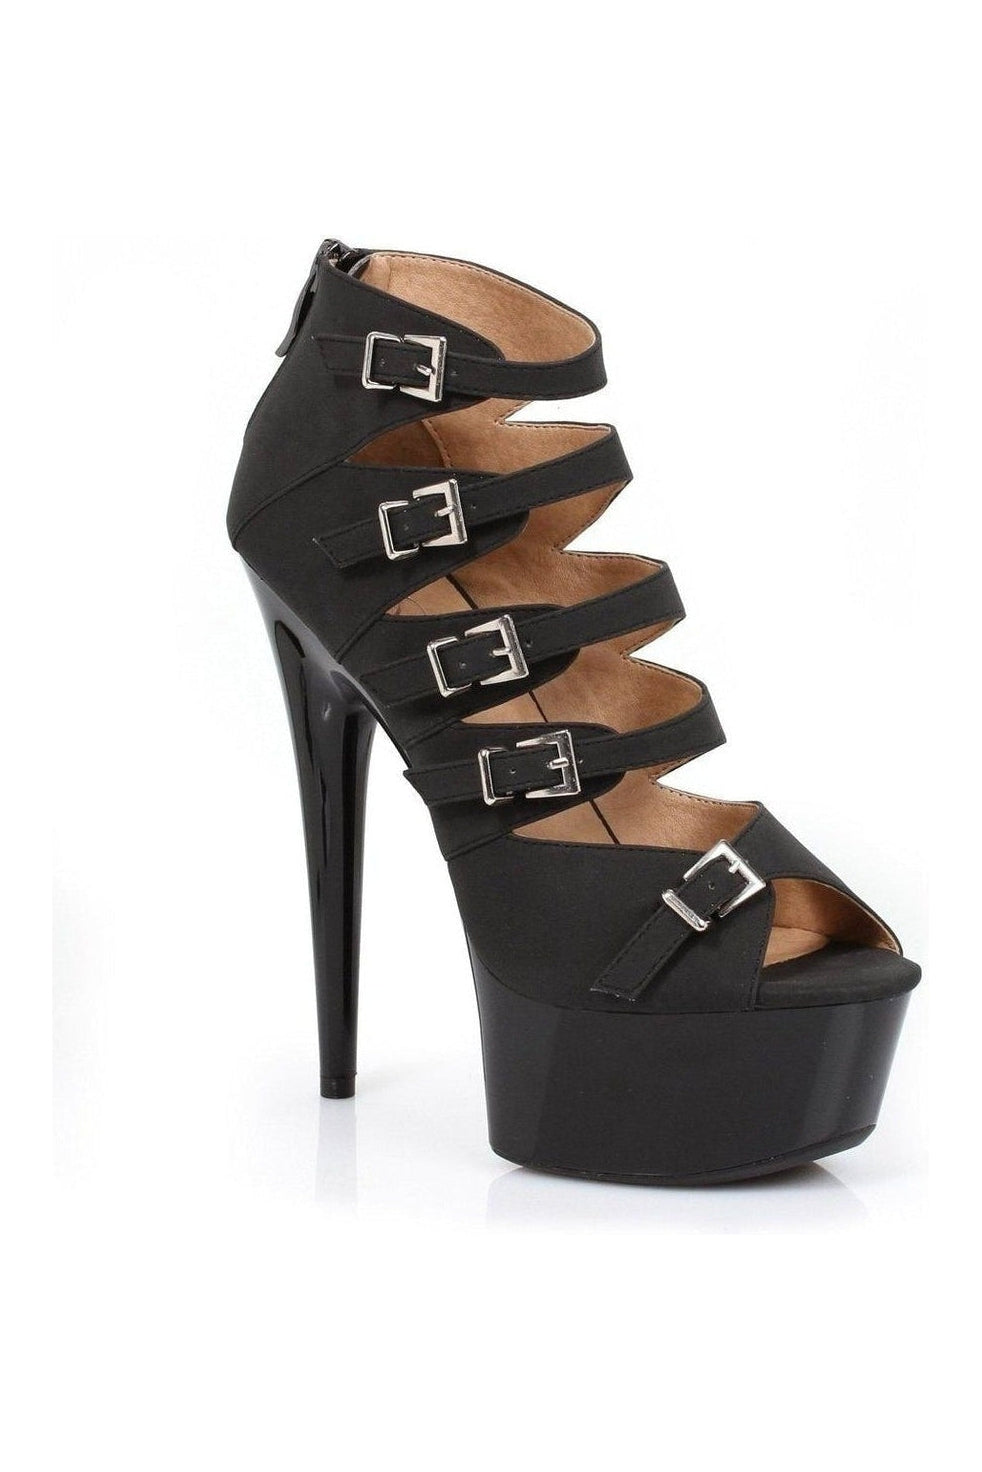 609-UNA Platform Sandal | Black Patent-Ellie Shoes-Black-Sandals-SEXYSHOES.COM